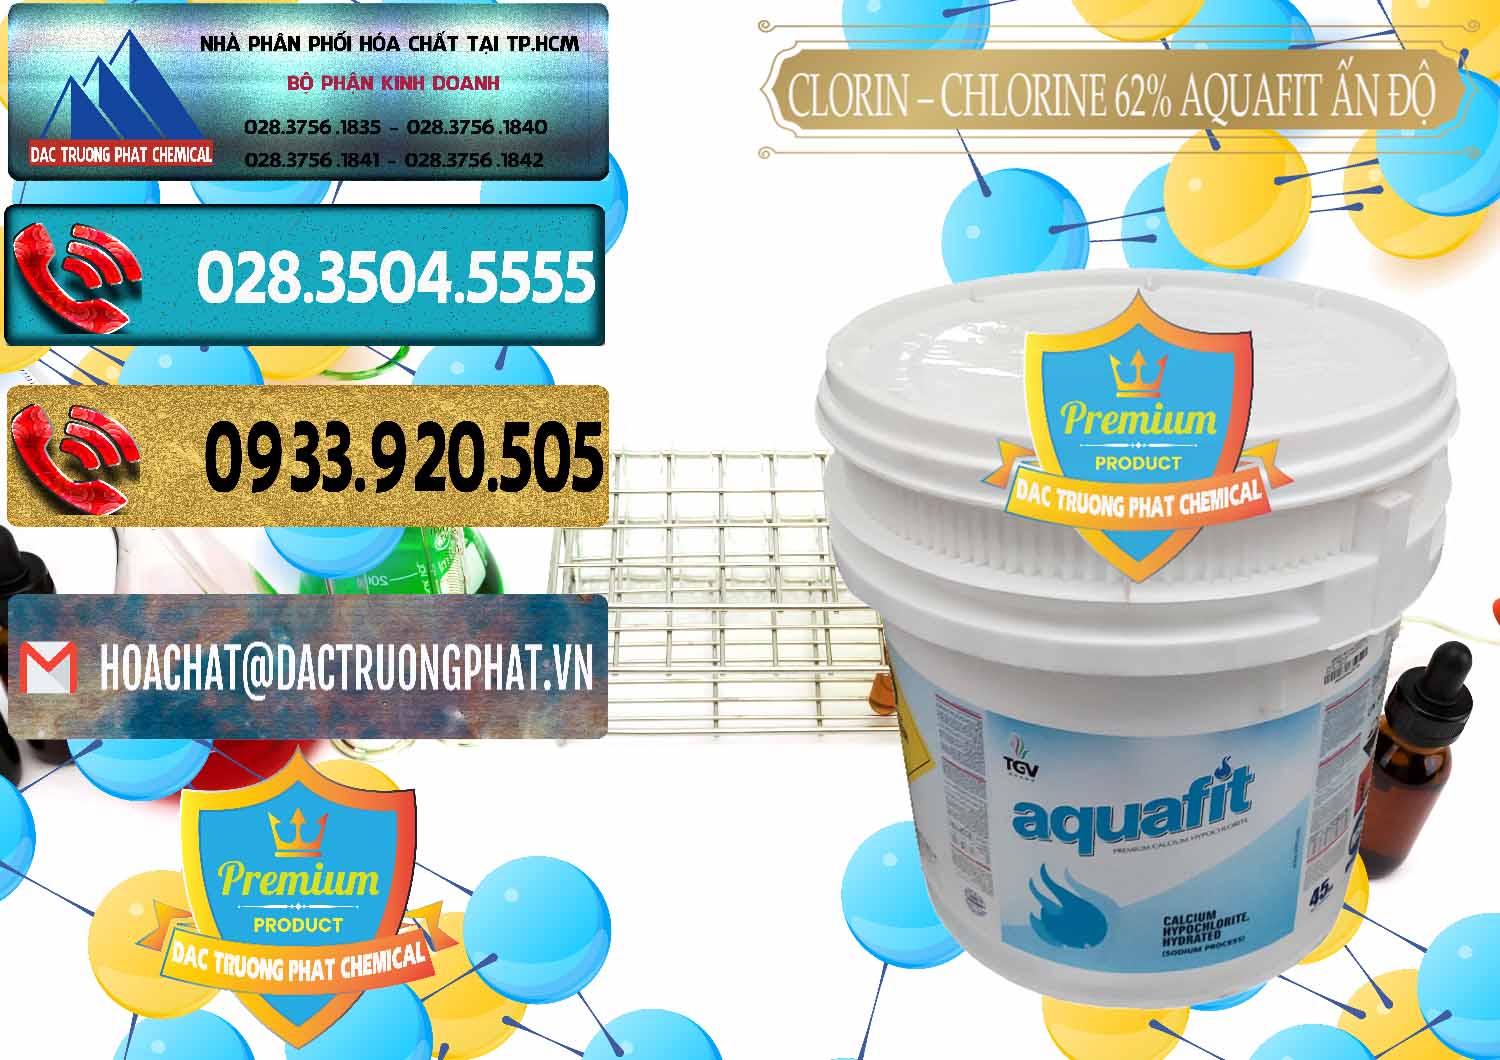 Cty chuyên kinh doanh _ bán Clorin - Chlorine 62% Aquafit Thùng Lùn Ấn Độ India - 0057 - Cty cung ứng - phân phối hóa chất tại TP.HCM - hoachatdetnhuom.com